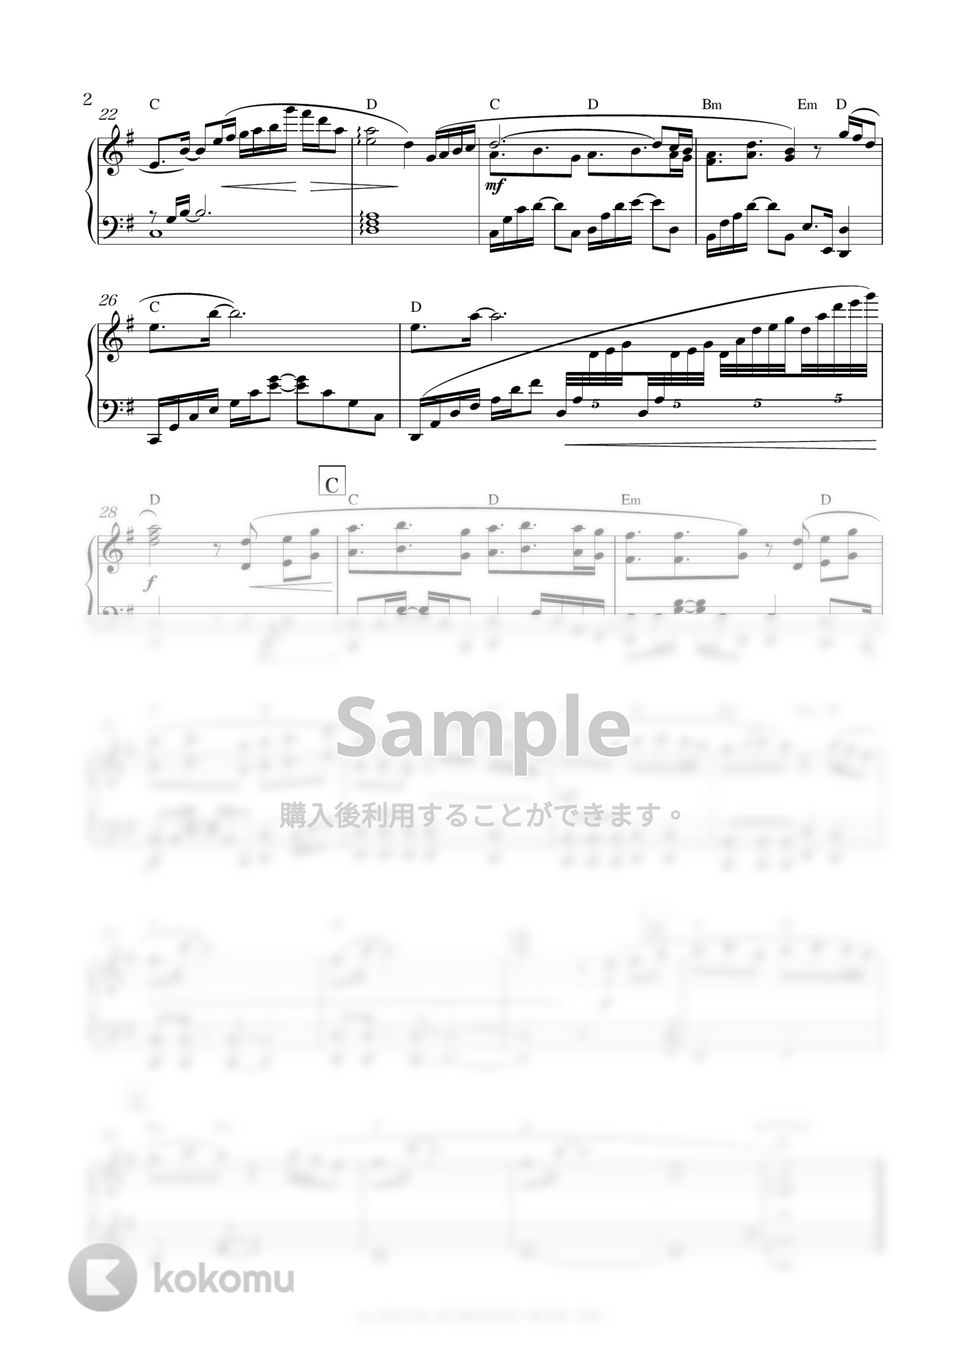 ドラマ『SUMMER NUDE』OST - Triangle Love (ドラマサイズ) by sammy